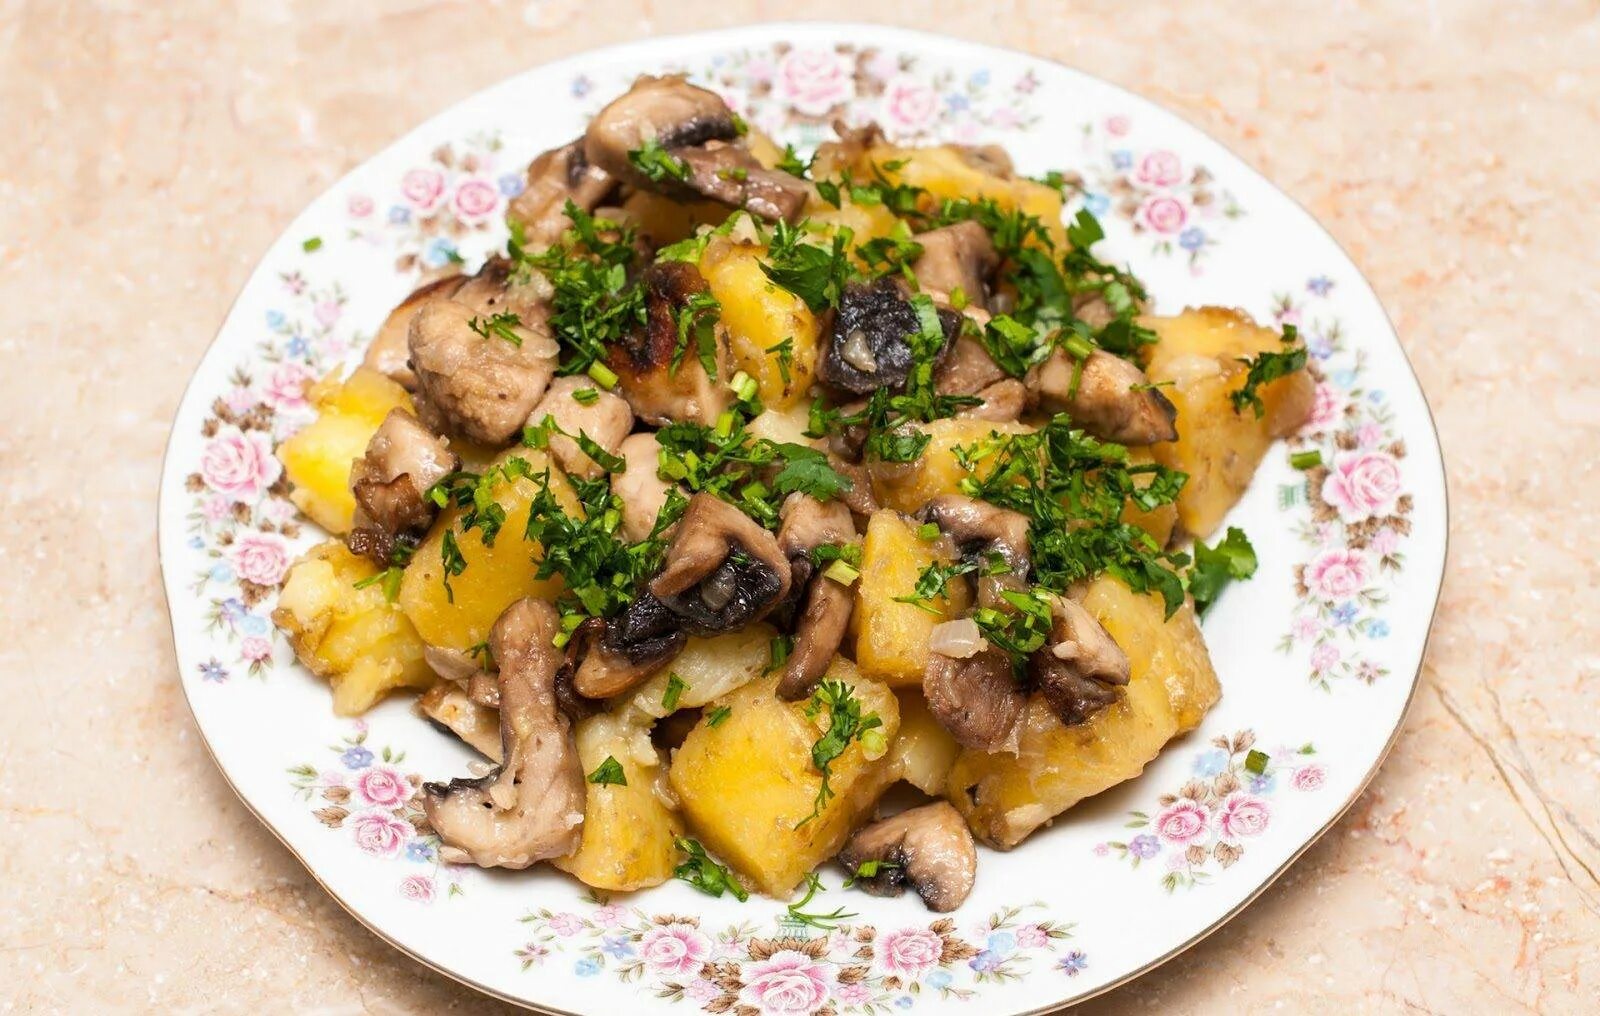 Картошка грудка шампиньоны. Жаркое с грибами и картошкой. Тушеная картошка с грибами. Жареная картошка с грибами и мясом. Картофель тушеный с грибами.